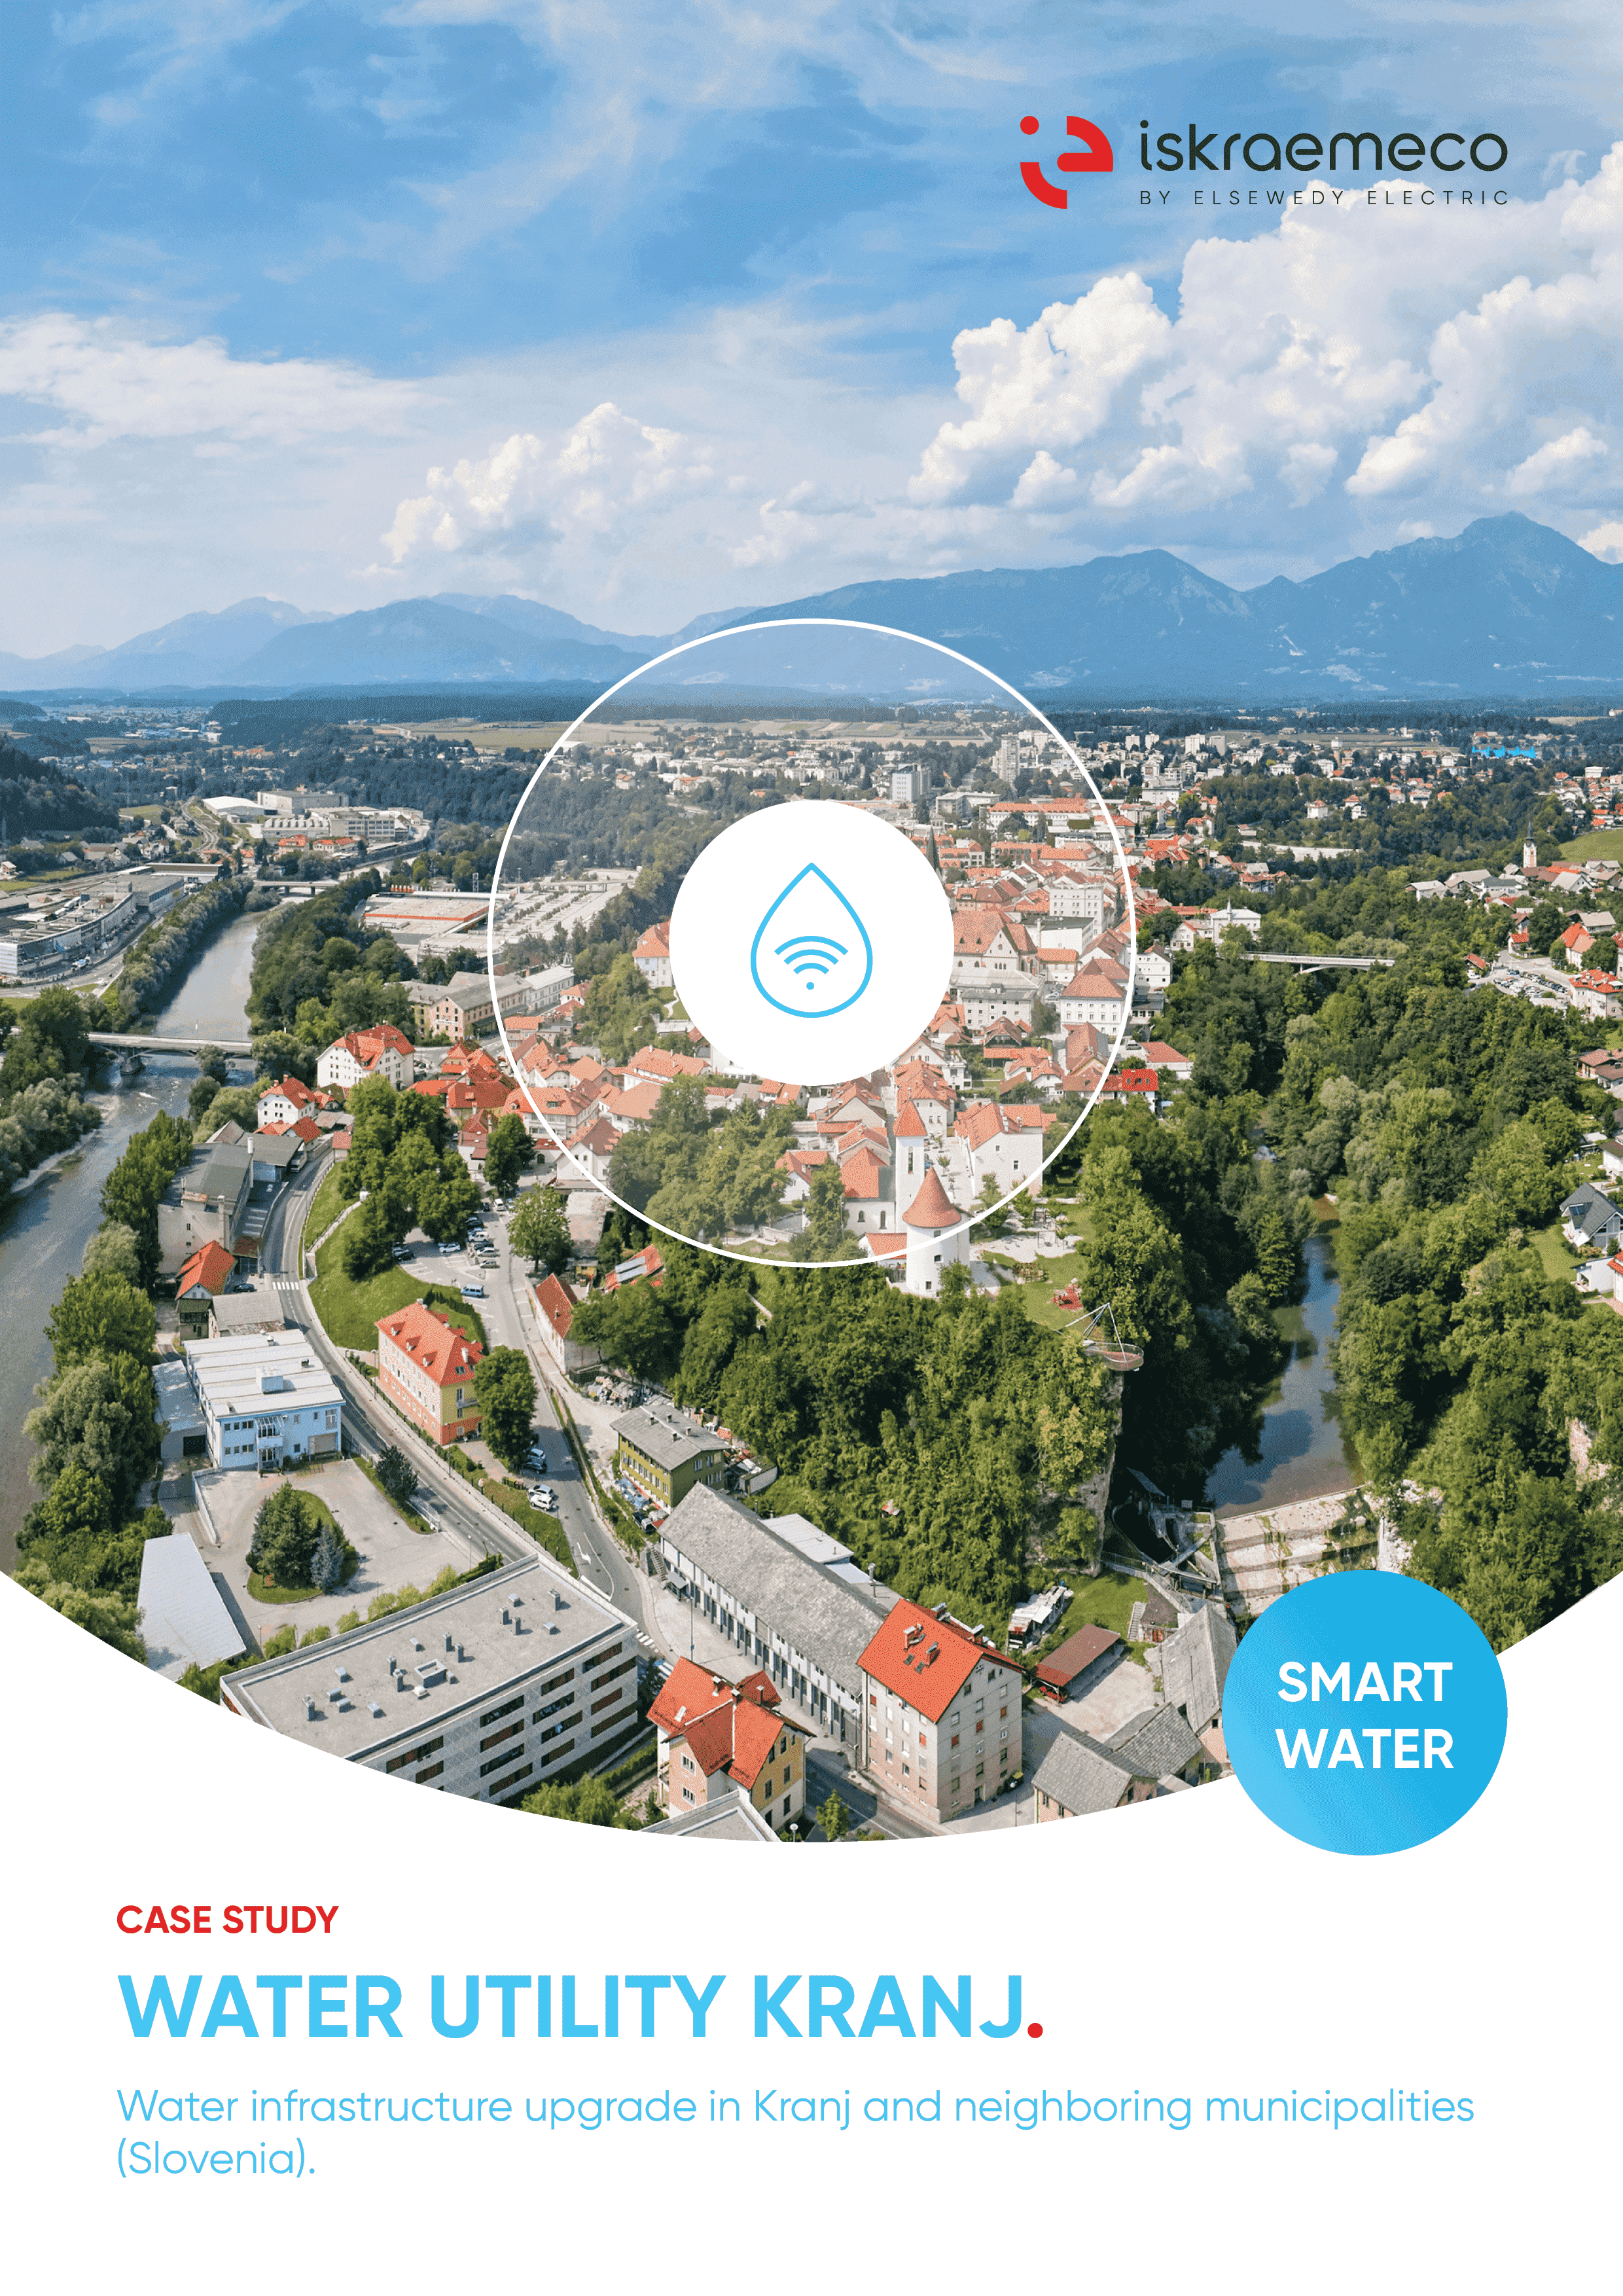 Amélioration des infrastructures hydrauliques à Kranj, en Slovénie